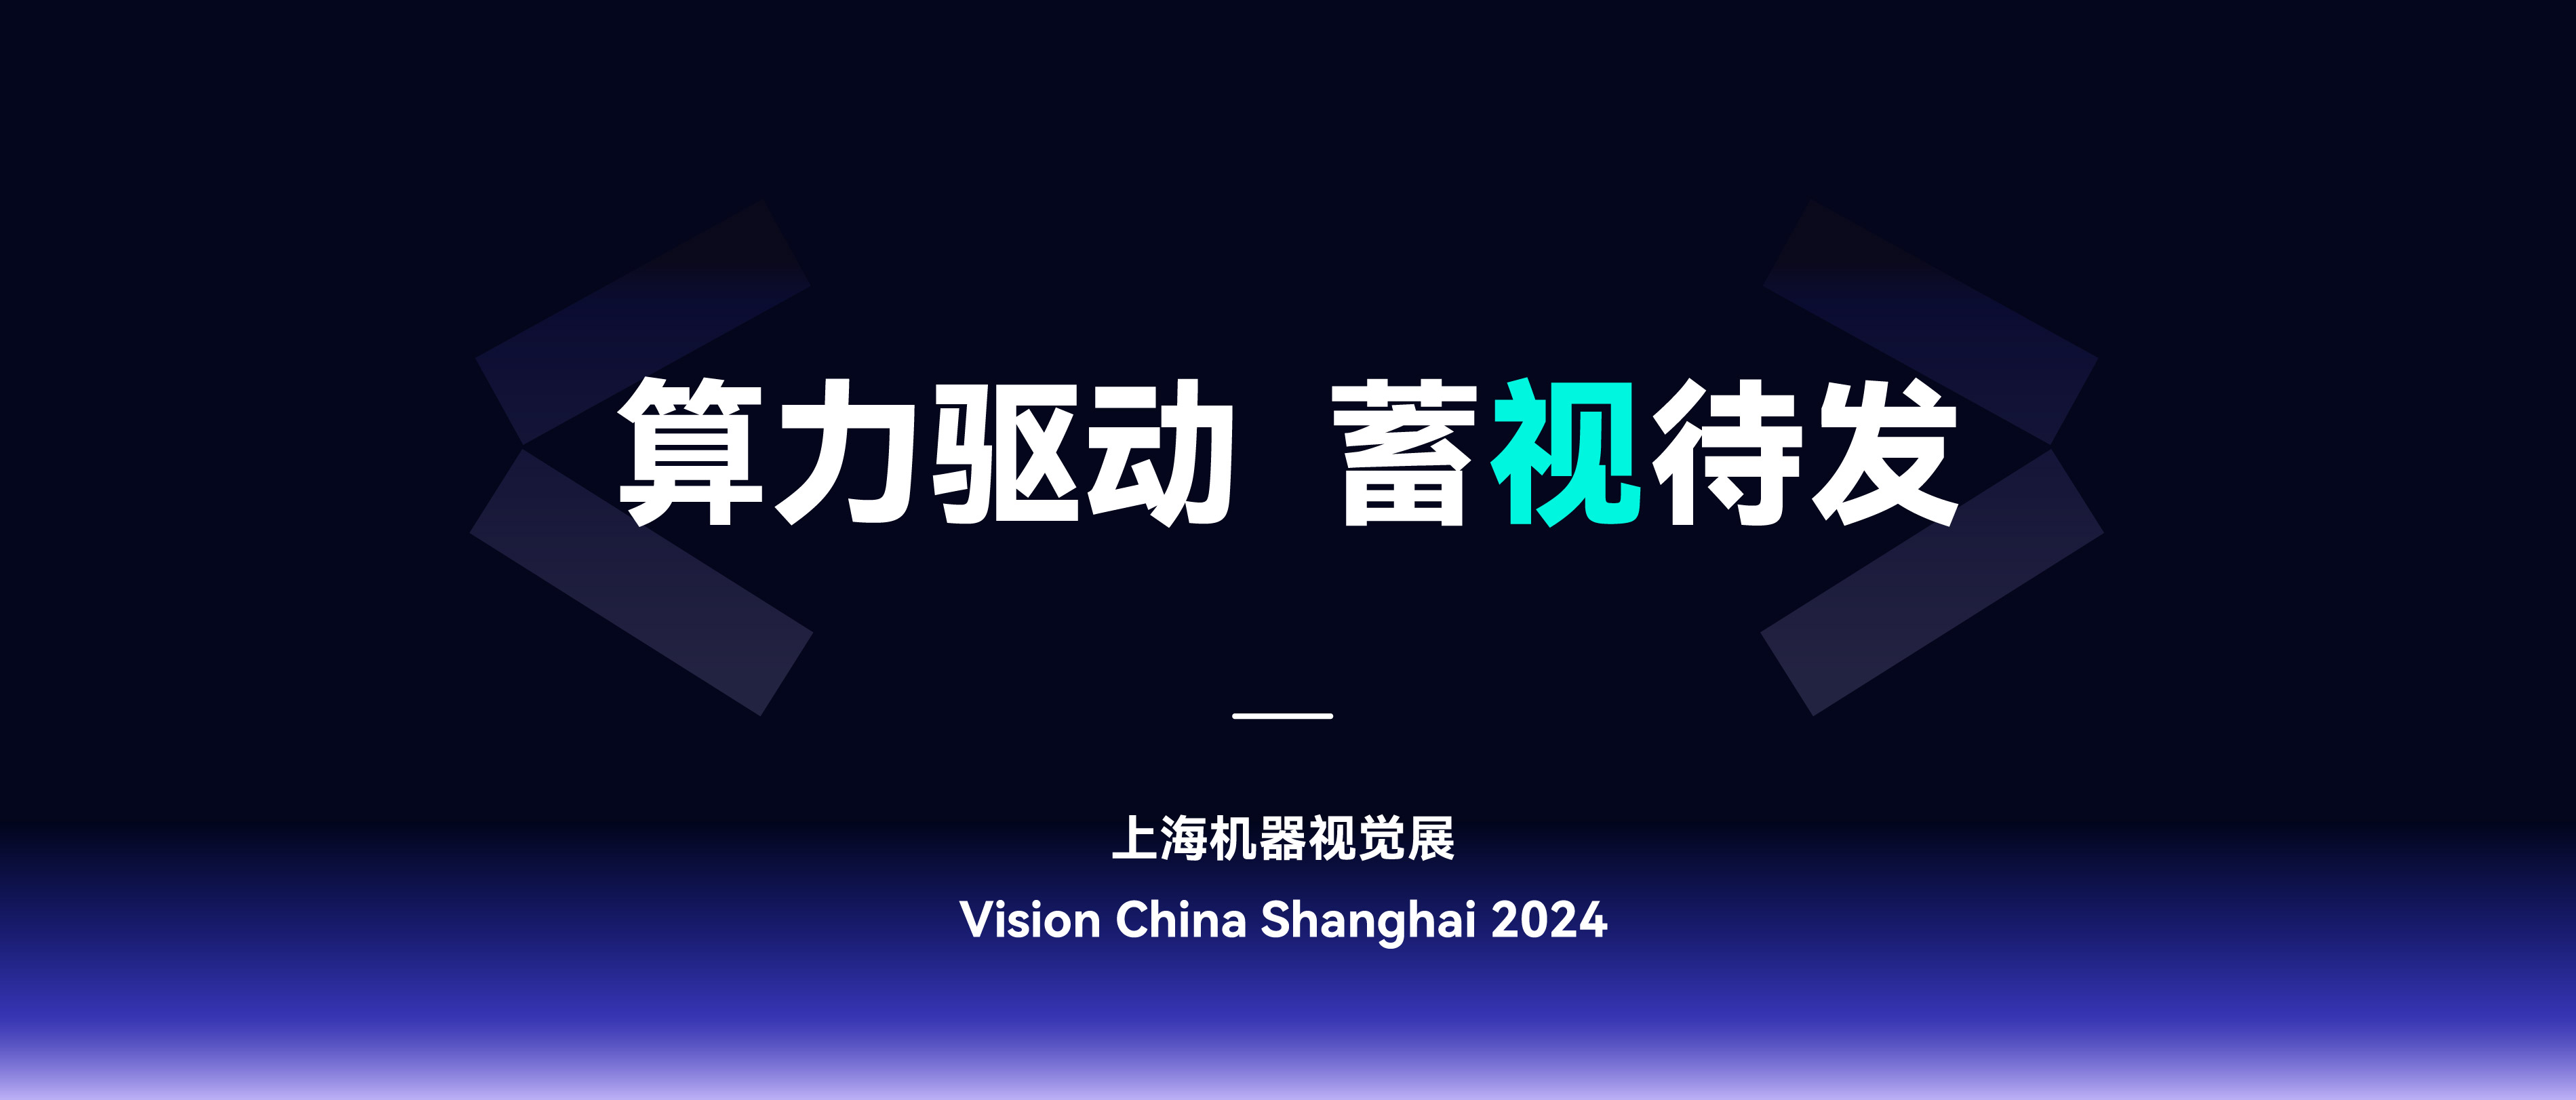 展会回顾 | 苏州源控盛装亮相 Vision China 2024 上海